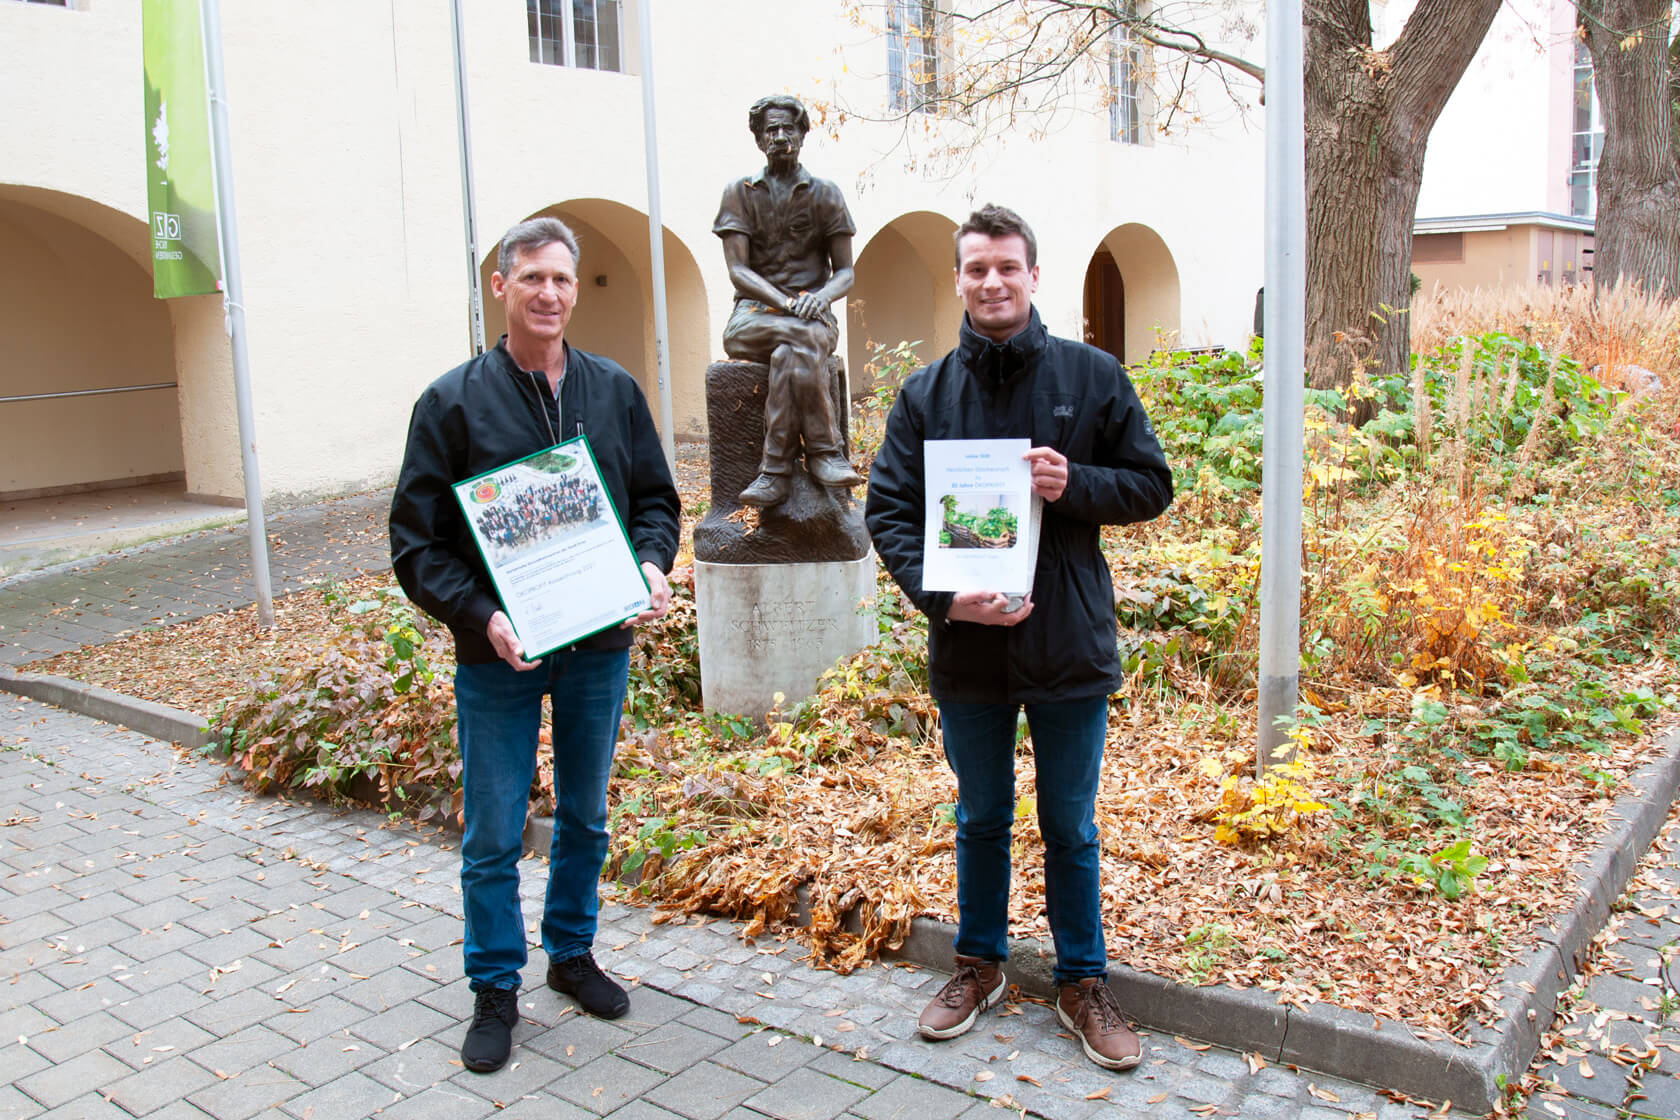 Übergabe der Ökoprofit Auszeichnung an Hans Schlager durch einen Vertreter des Umweltamtes vor der Albert Schweitzer Statue am Gelände der GGZ